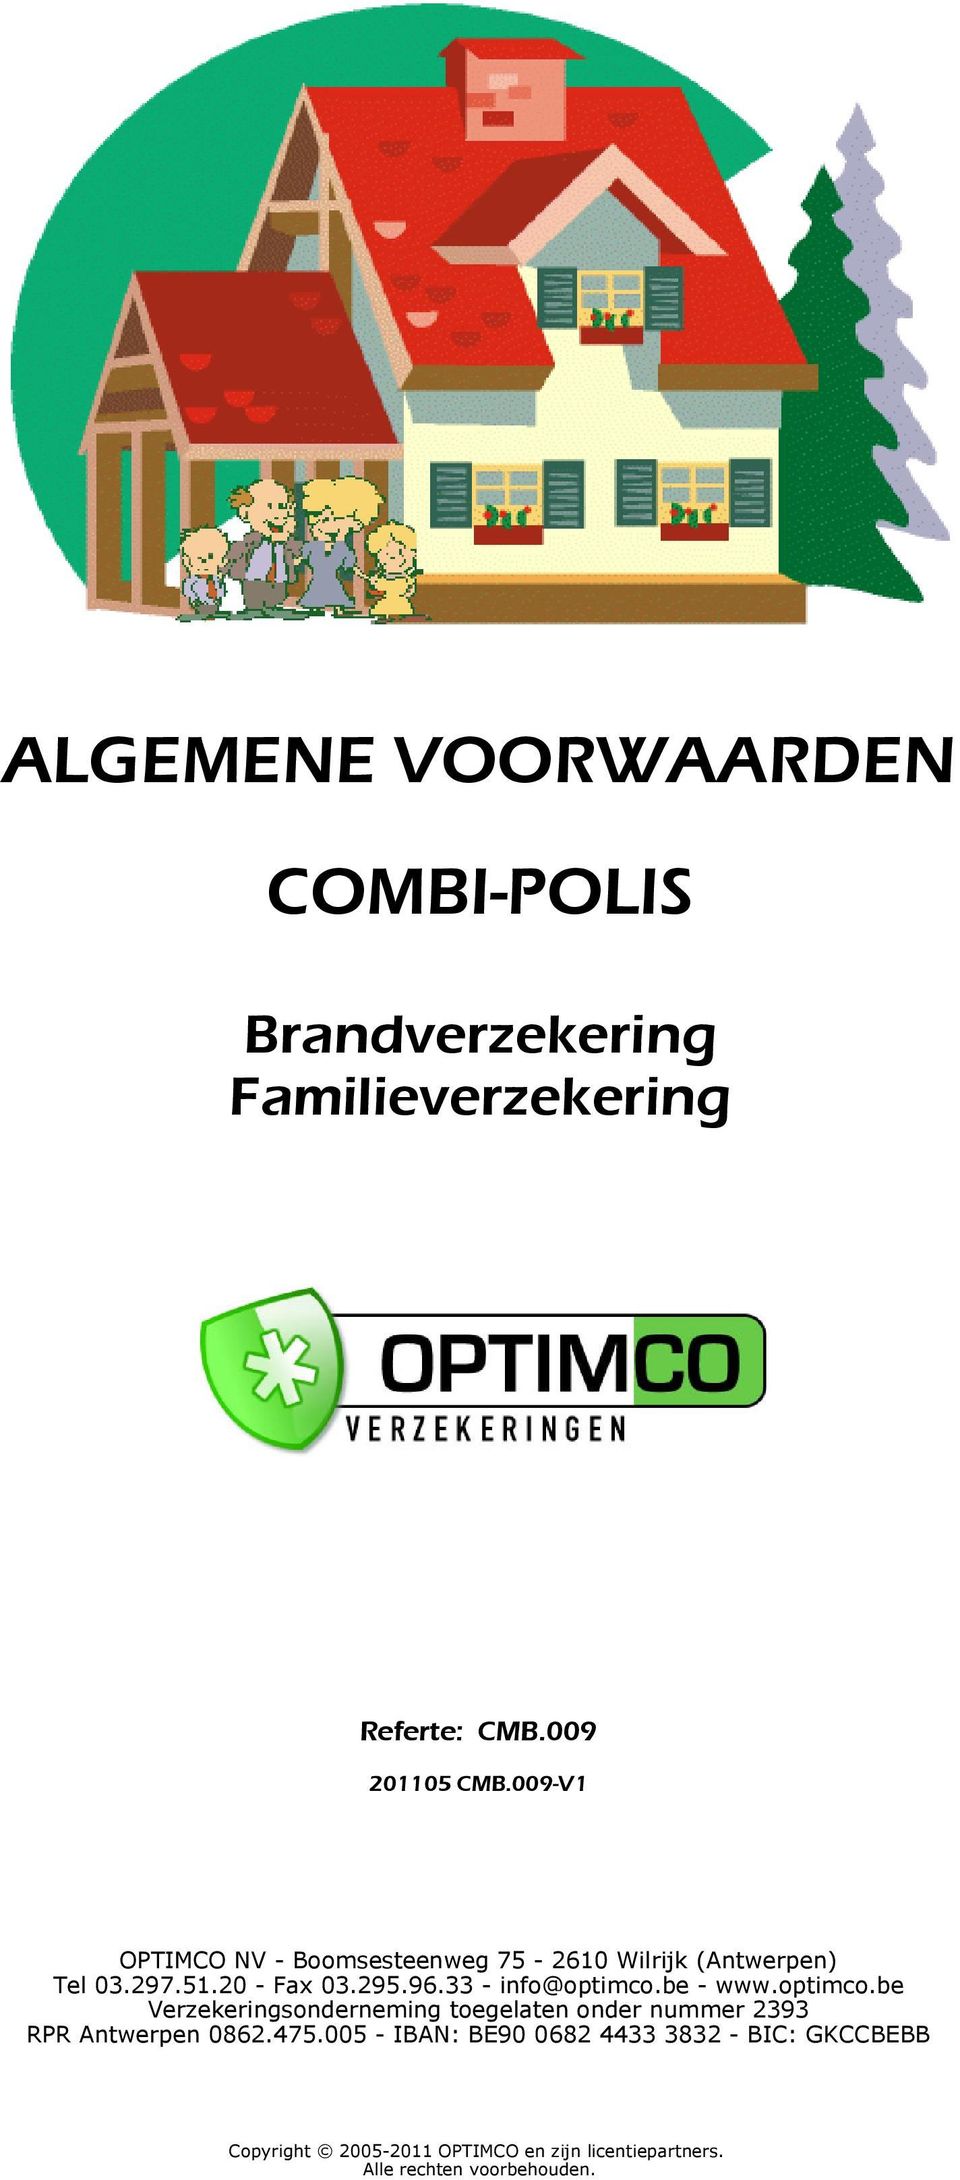 33 - info@optimco.be - www.optimco.be Verzekeringsonderneming toegelaten onder nummer 2393 RPR Antwerpen 0862.